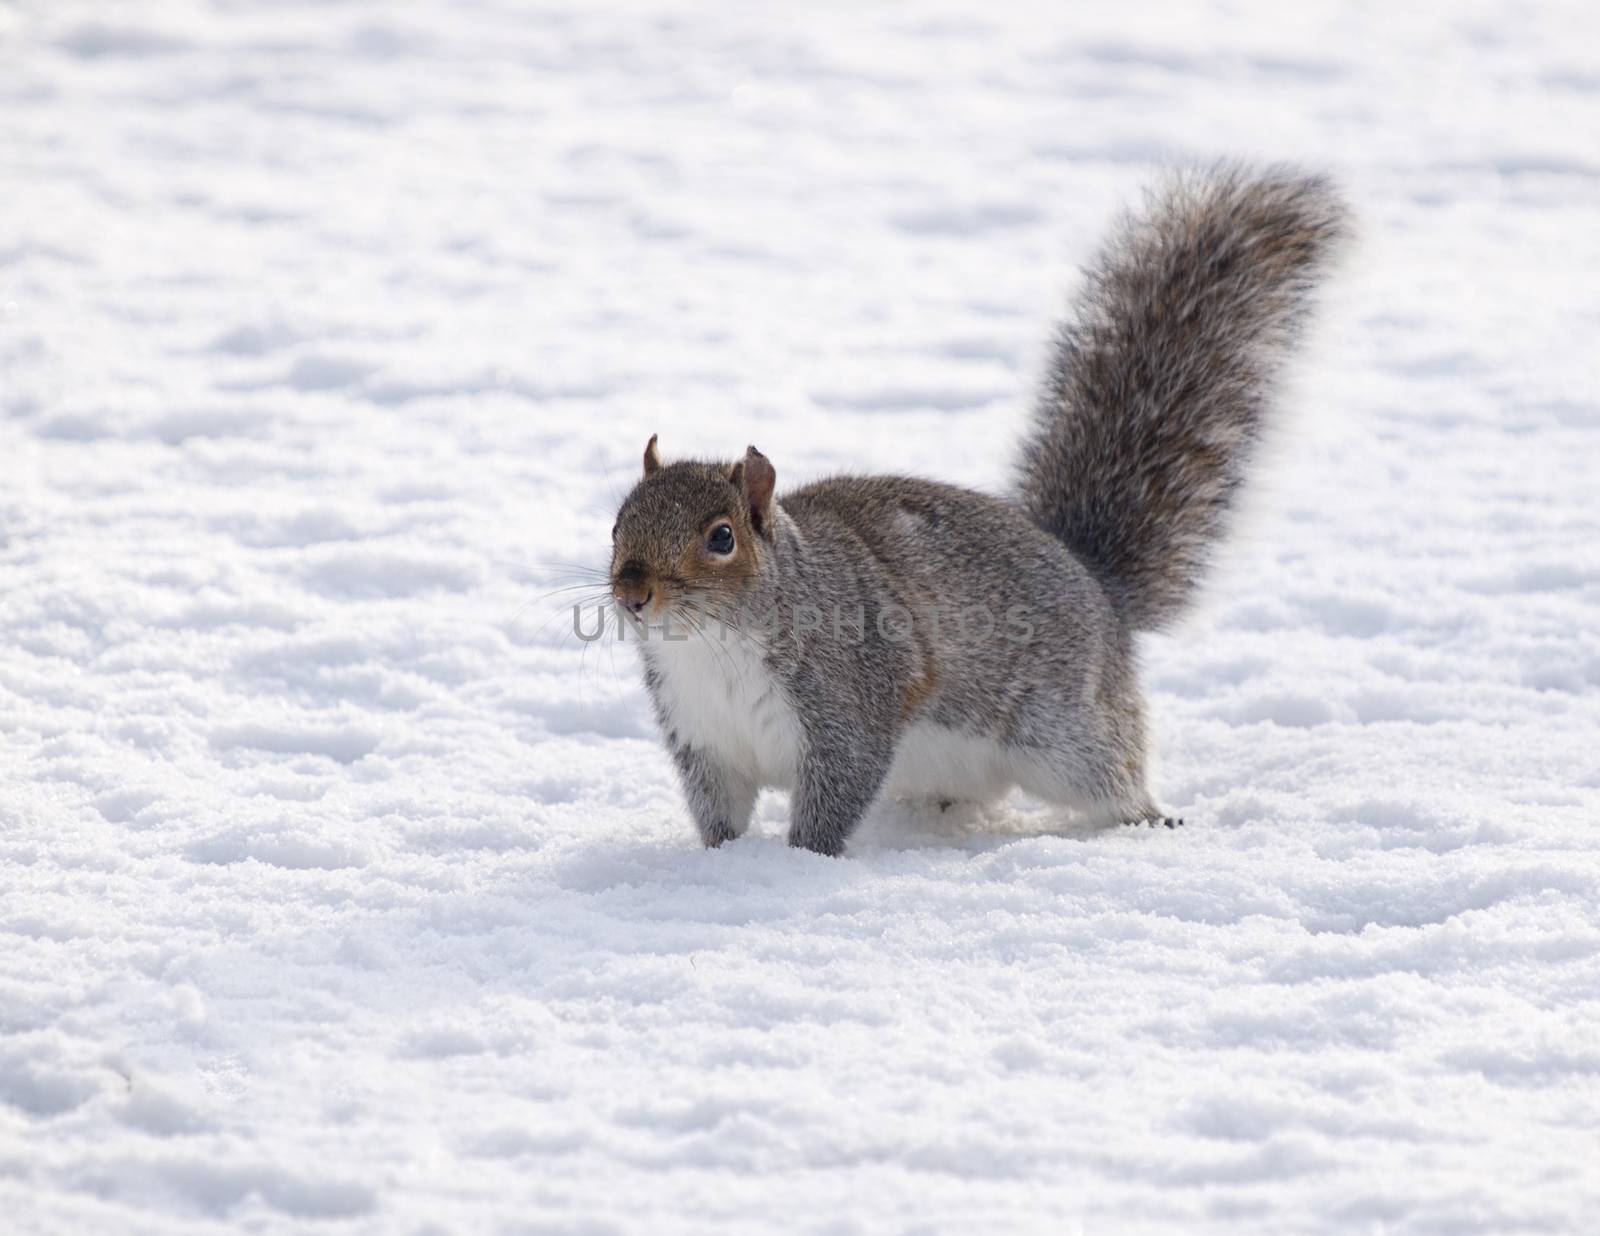 Grey squirrel in snow